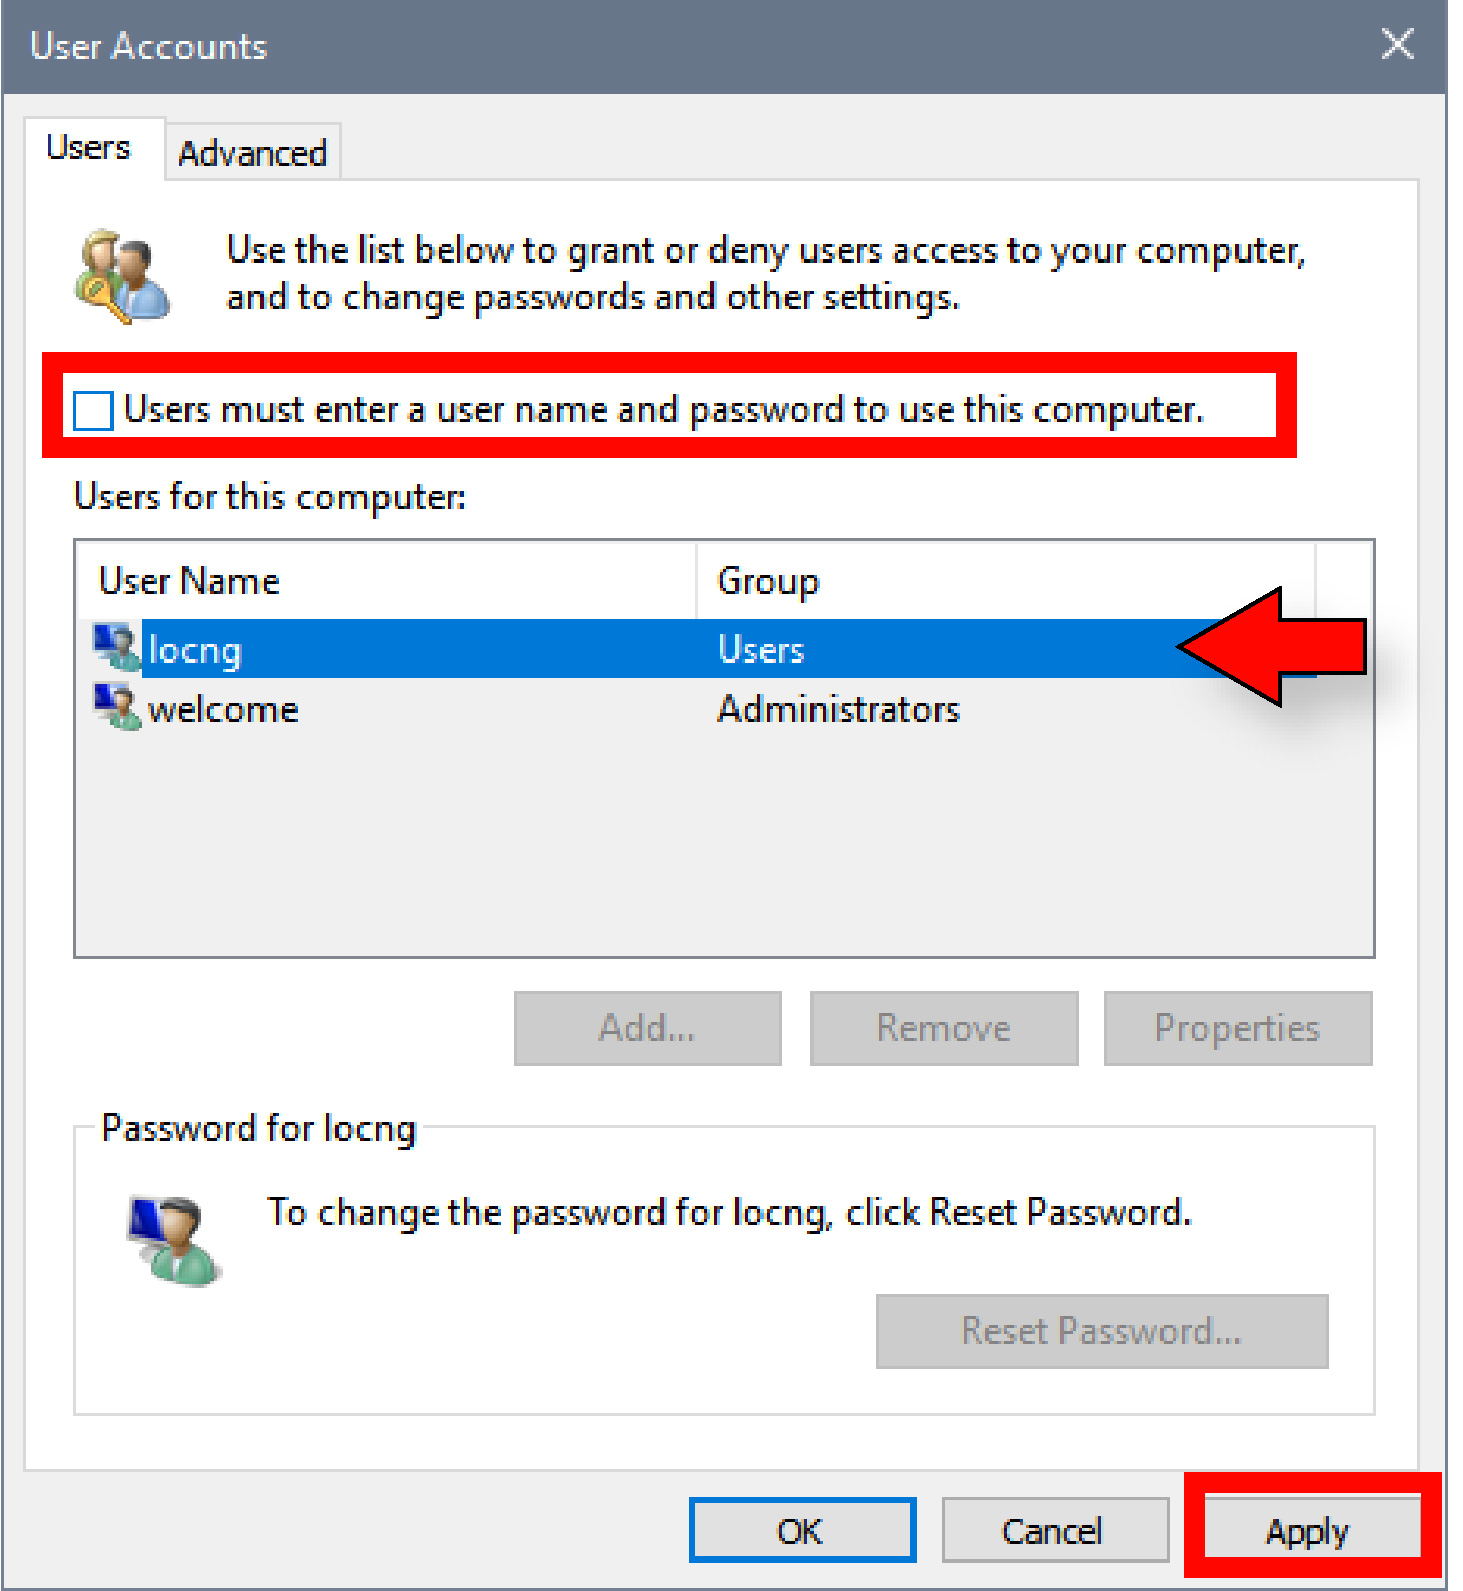 Chọn tài khoản muốn xóa mật khẩu xong bỏ tích khung Users must enter a user name and password to use this computer rồi nhấn Apply.